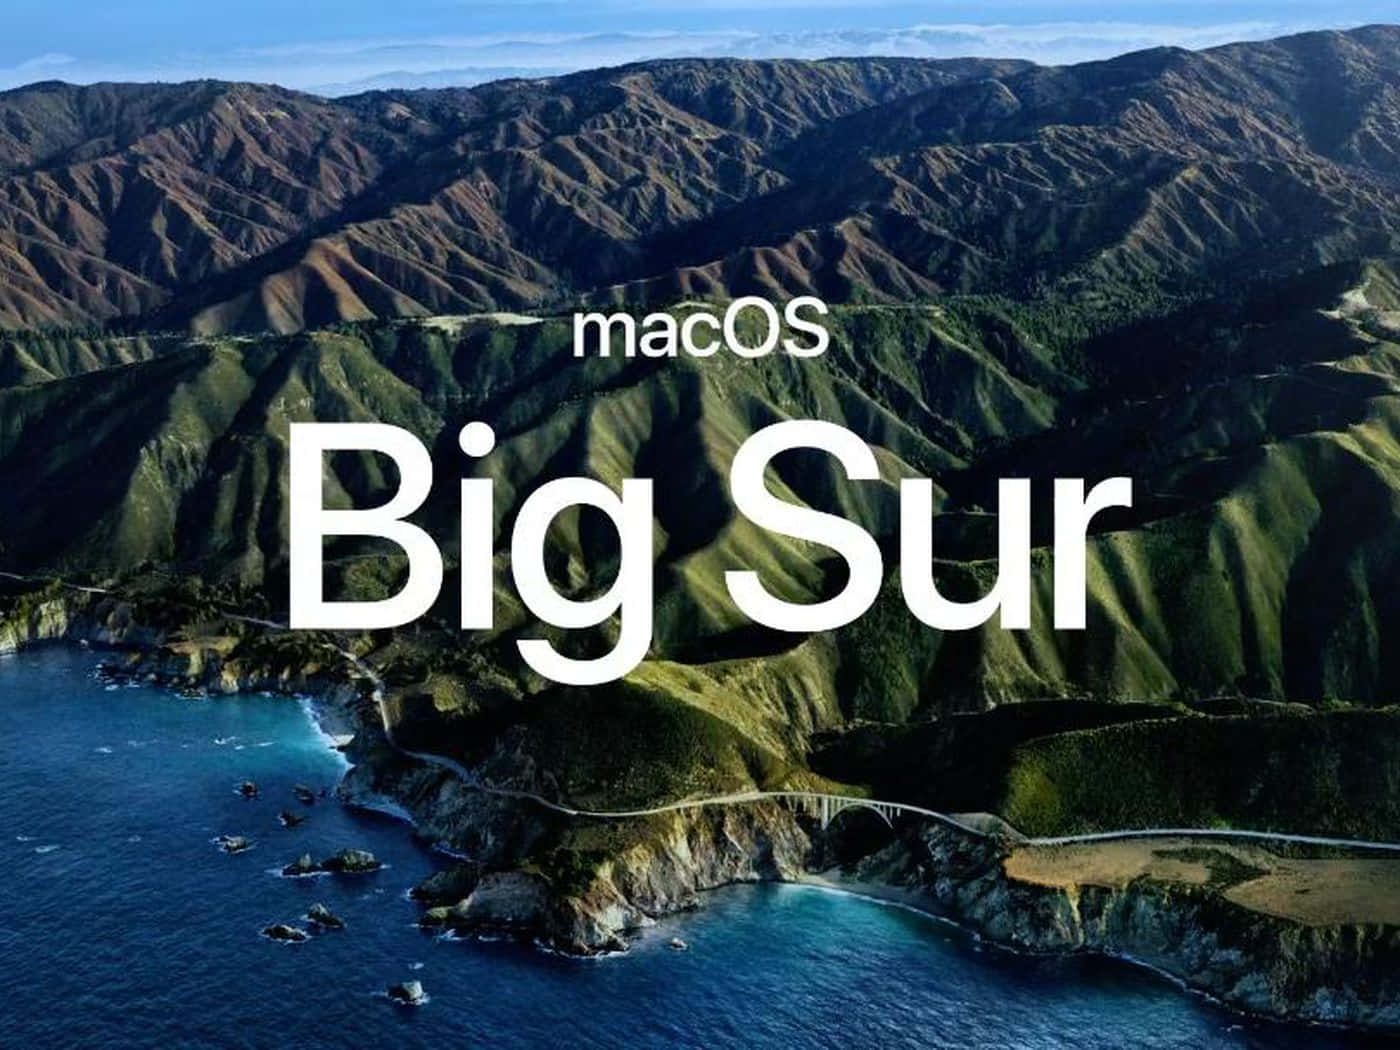 macOS Big Sur Stunning Landscape